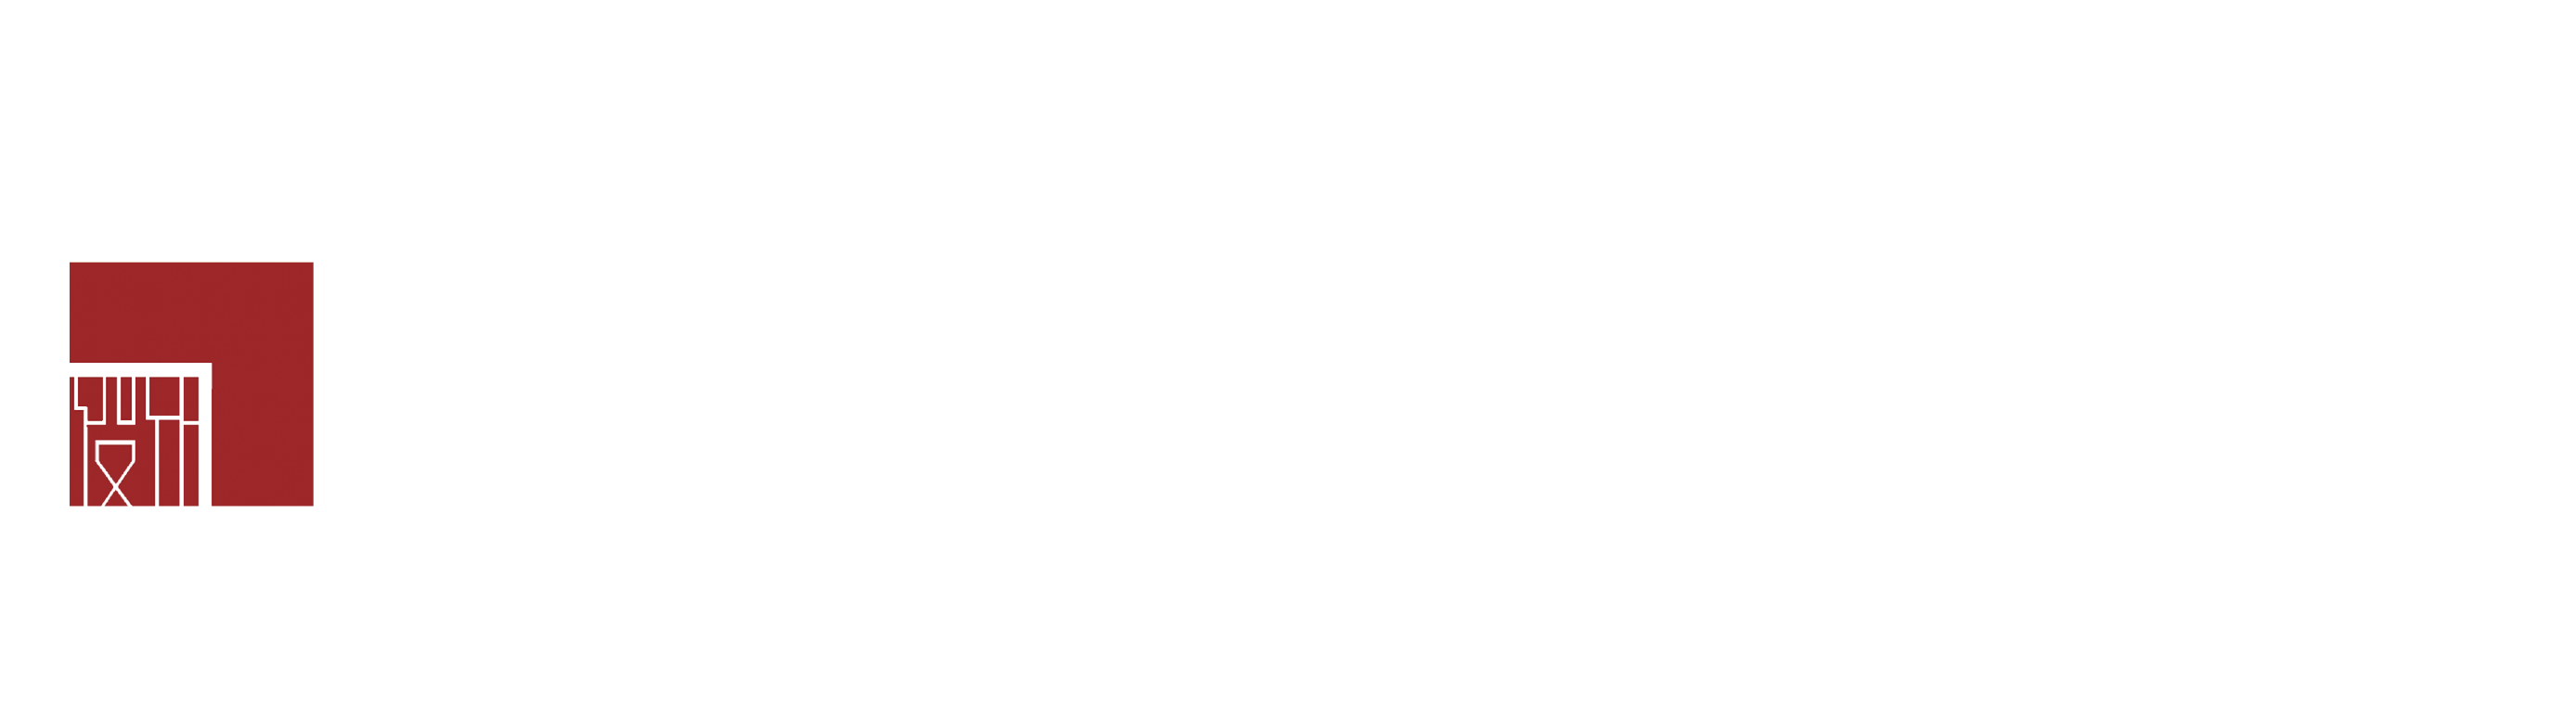 七视野教育品牌设计,北京校园文化,七视野教育空间设计,创客教育一站式服务,教育品牌策划,特色课程,生态教育,七视野,七道设计,现代STEAM 教育,STEAM创客课程设计